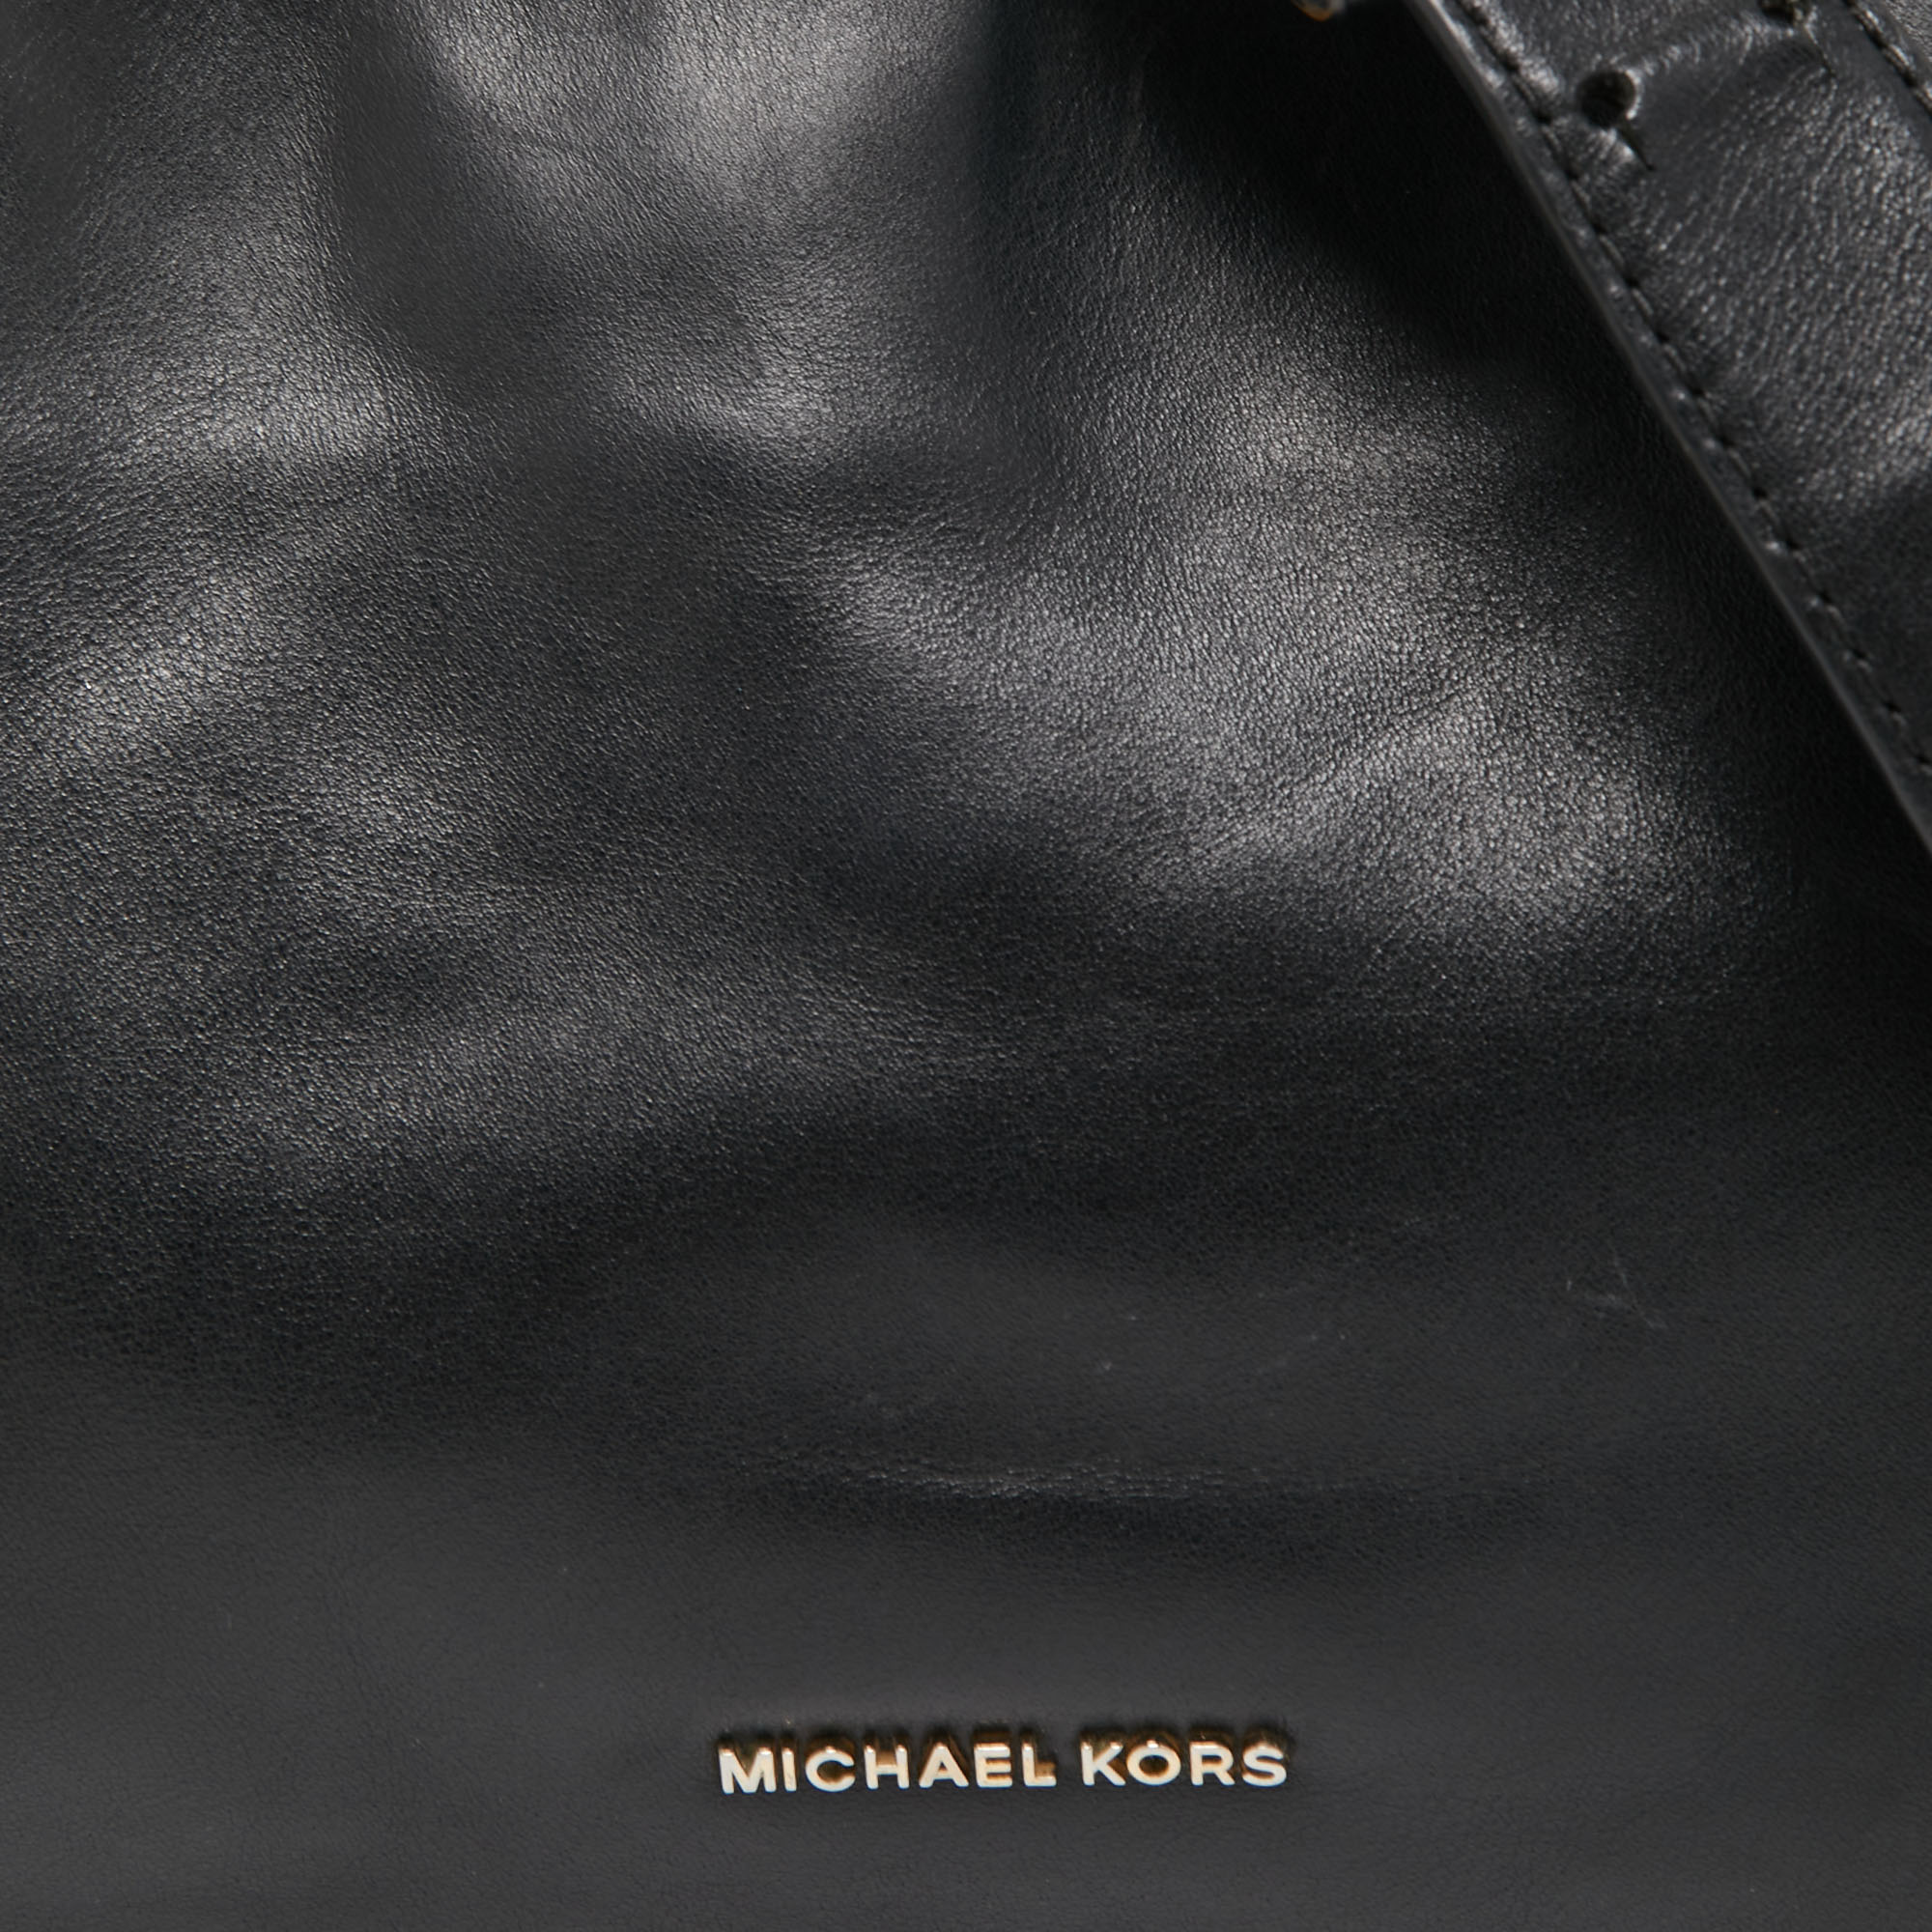 Michael Kors Black Leather Raven Shoulder Bag